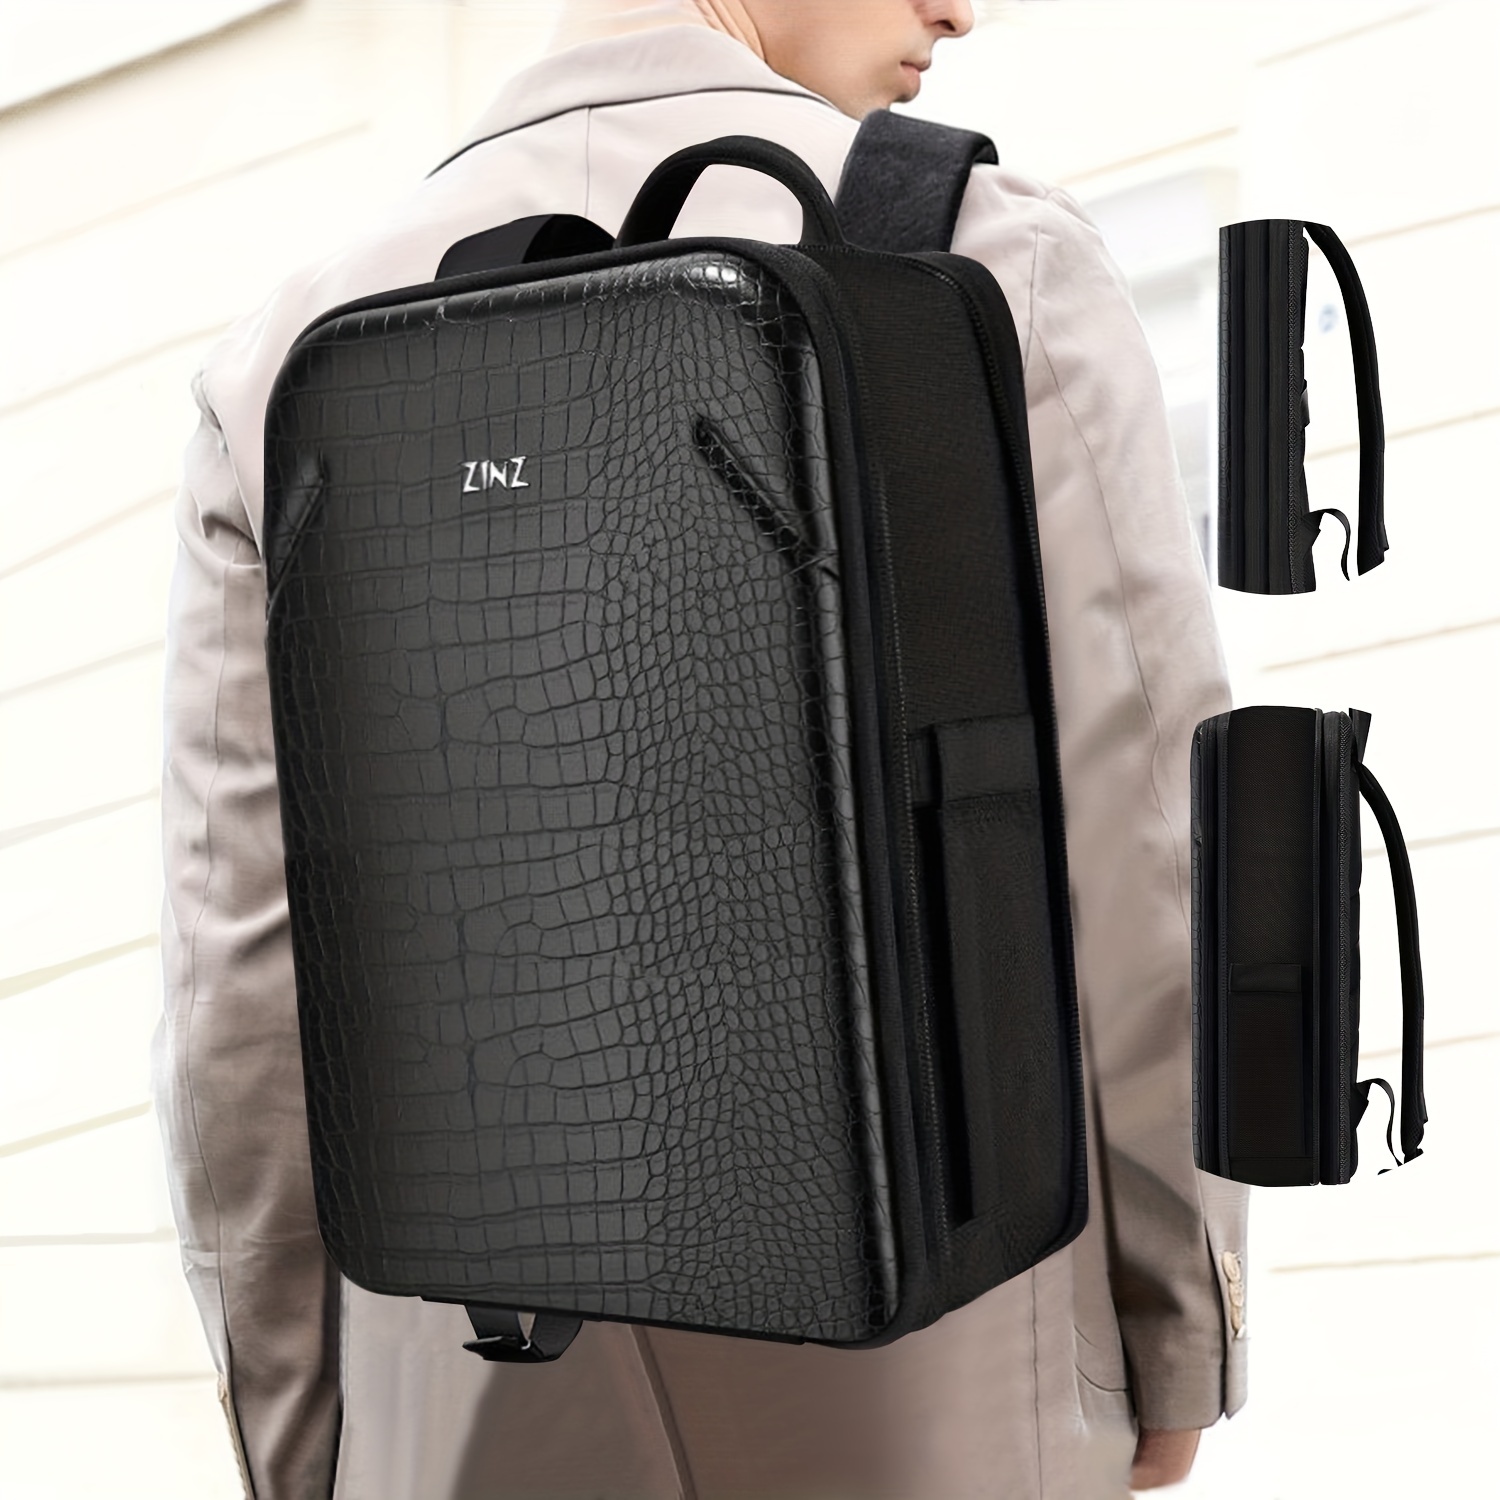 Slim Laptop Backpack for Men 15.6 inch Backpack Waterproof College